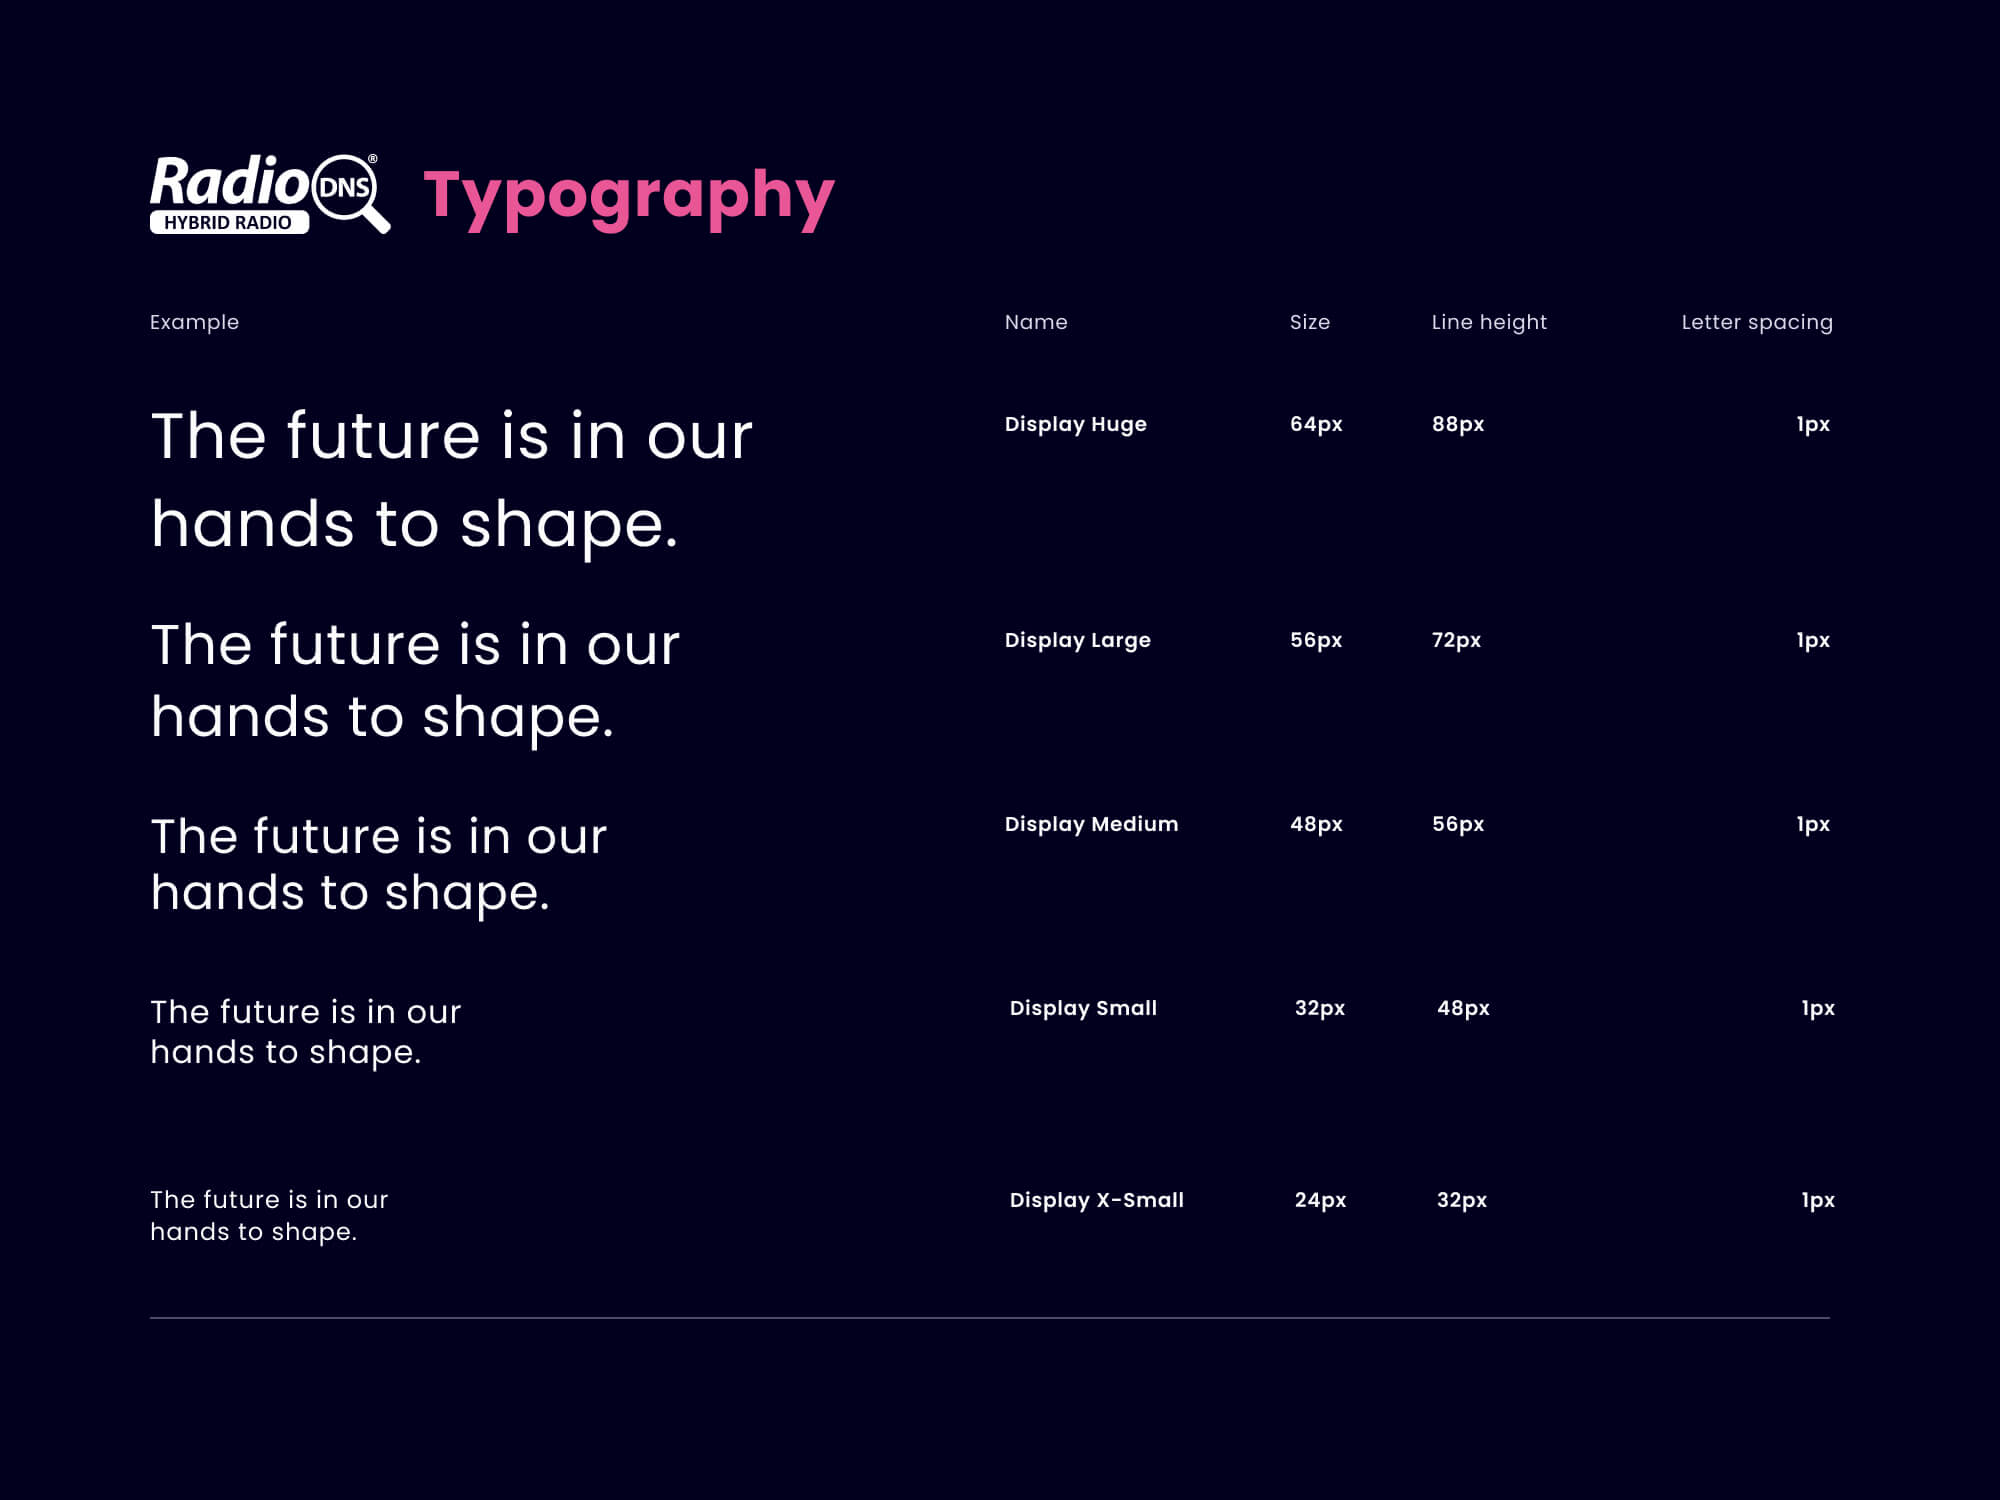 yelo-radiodns-design-system-typography